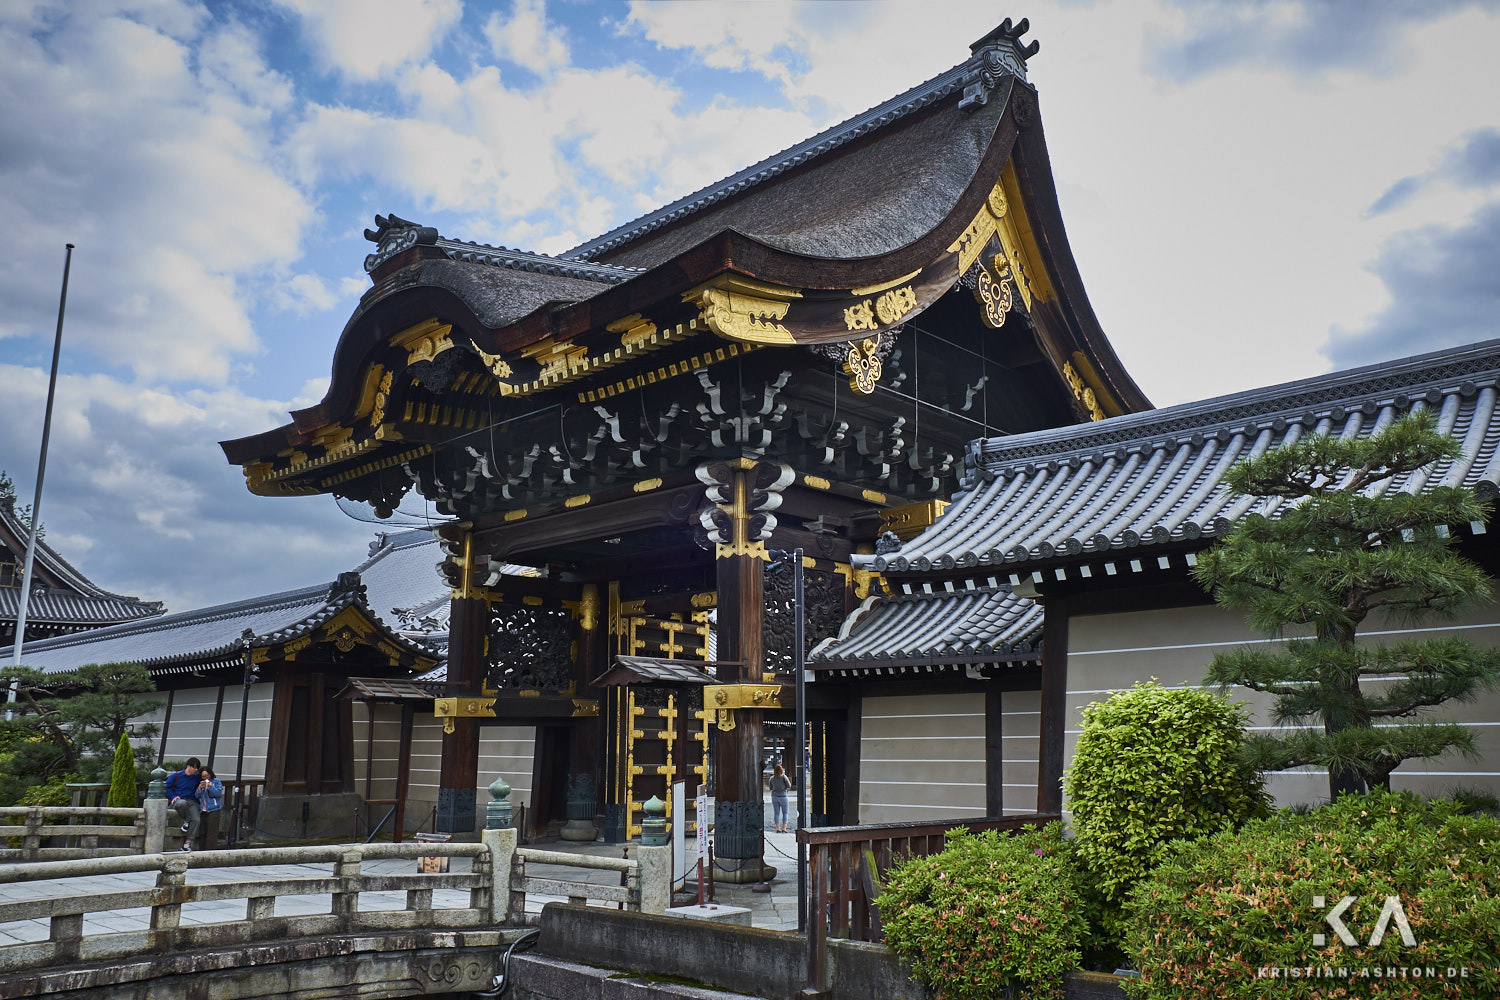 Nishi Hongan-ji temple